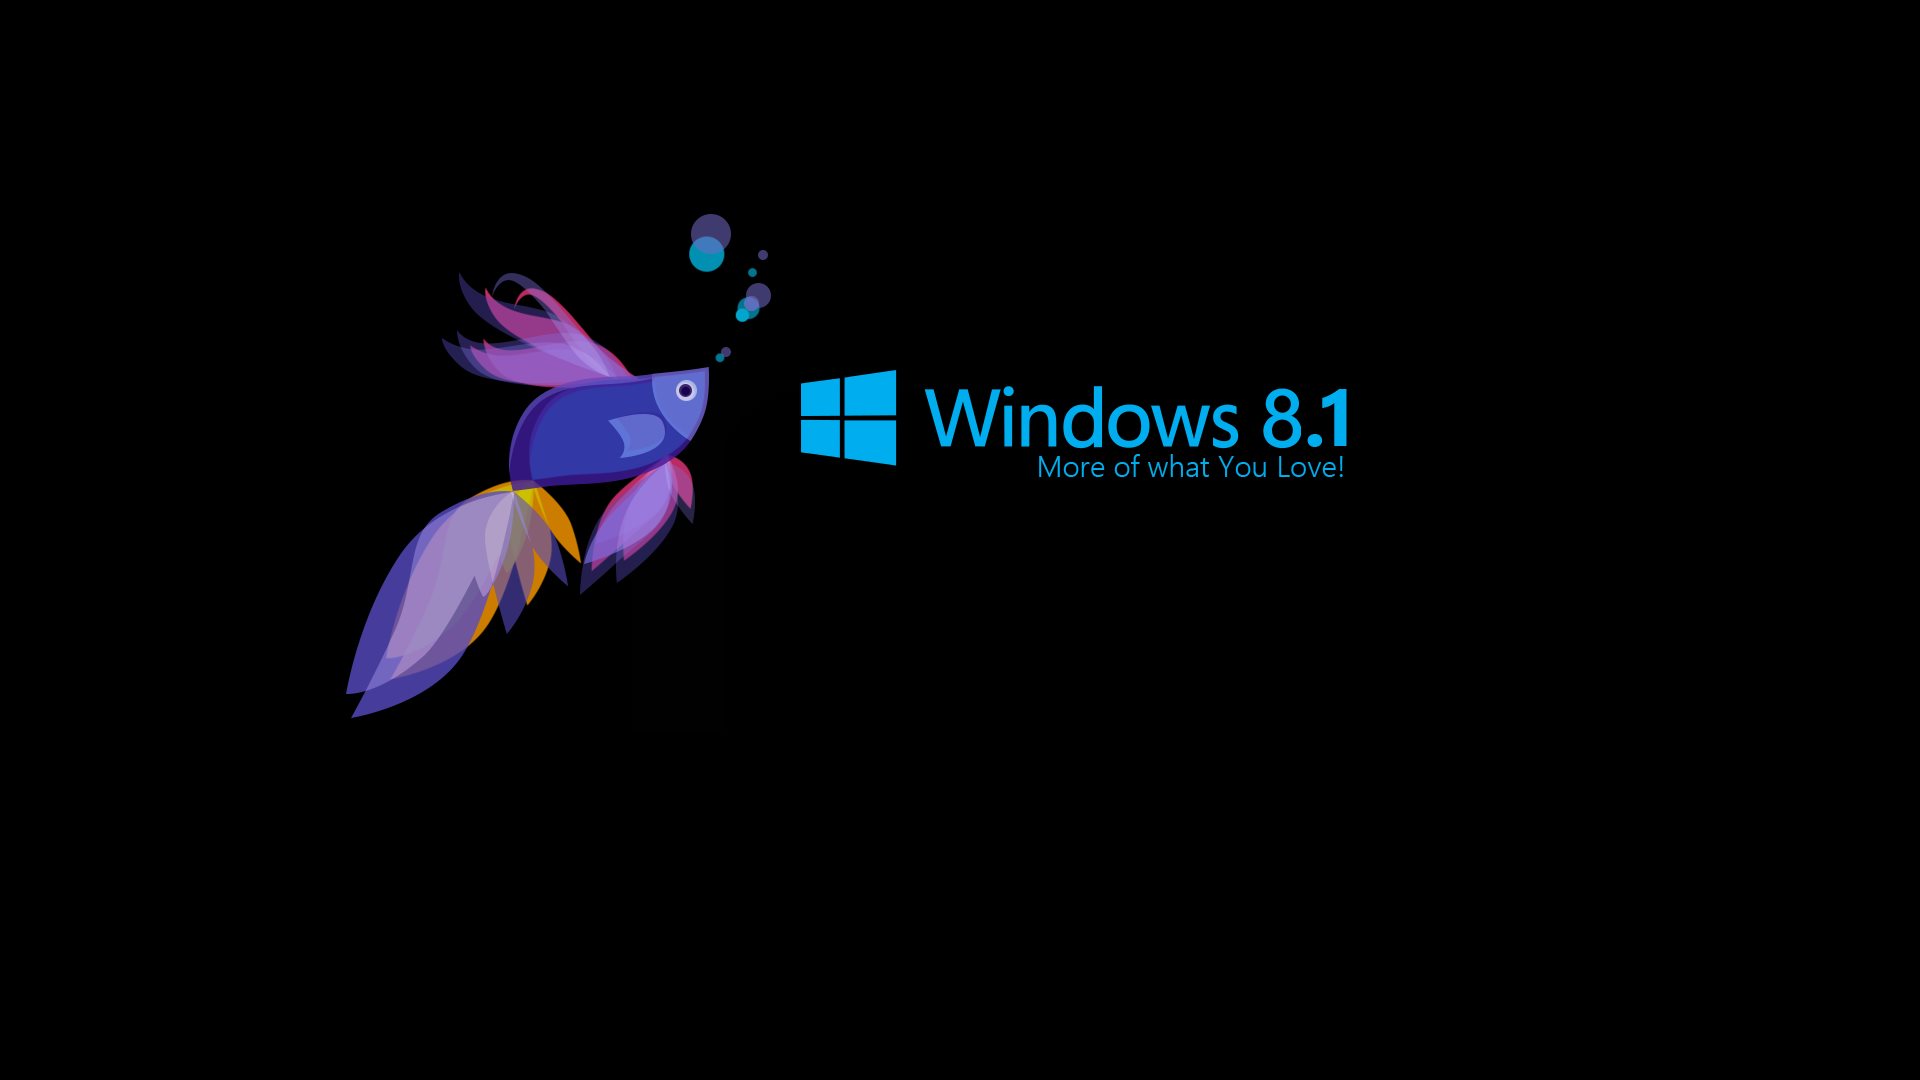 Скачать обои Windows 8 1 на телефон бесплатно